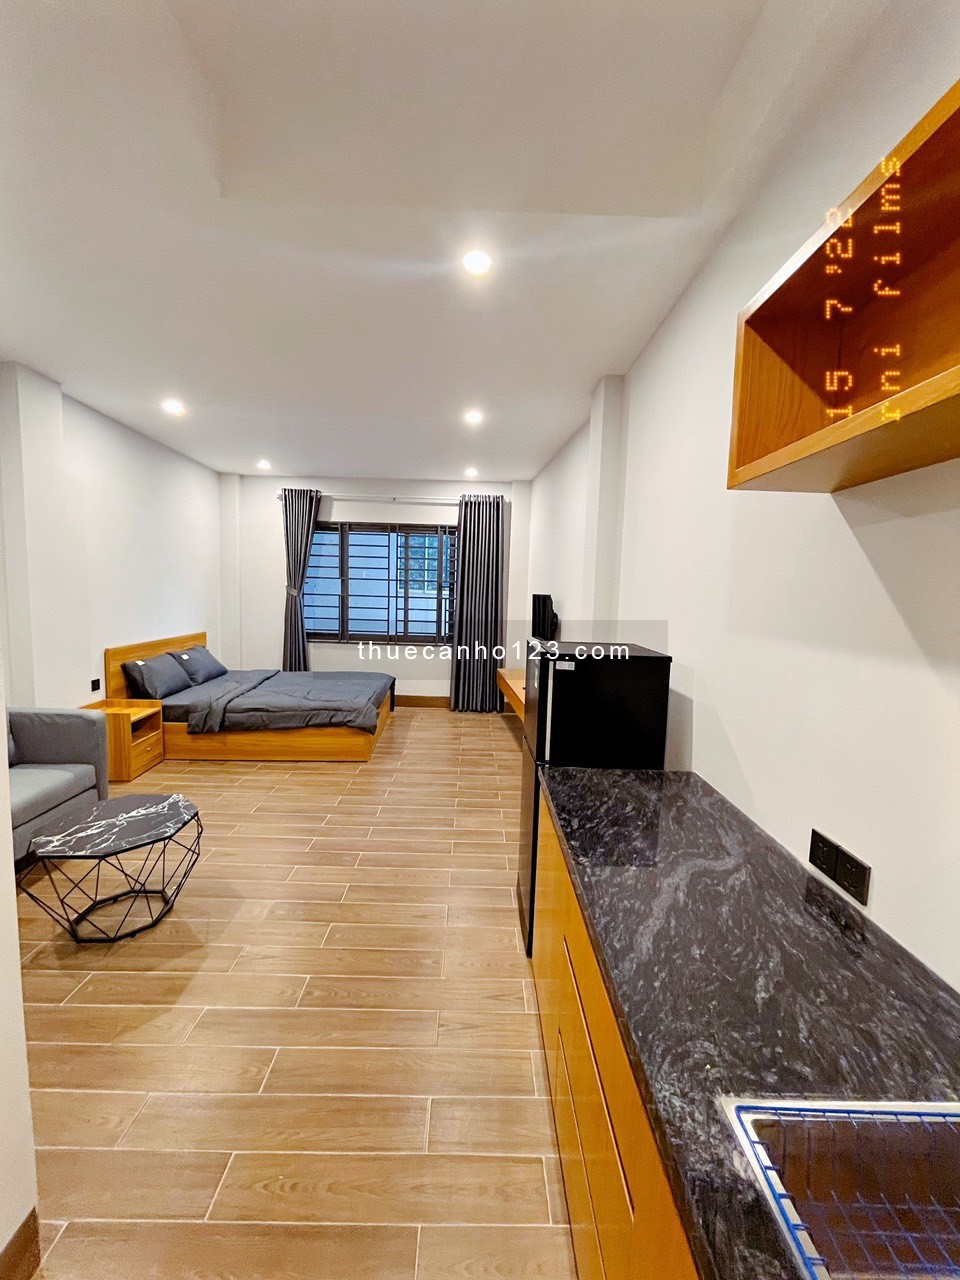 Cho thuê căn hộ gần Nhà Thờ Tân Định - Cầu Kiệu nhà mới FULL nội thất không giới hạn người ở - Q3